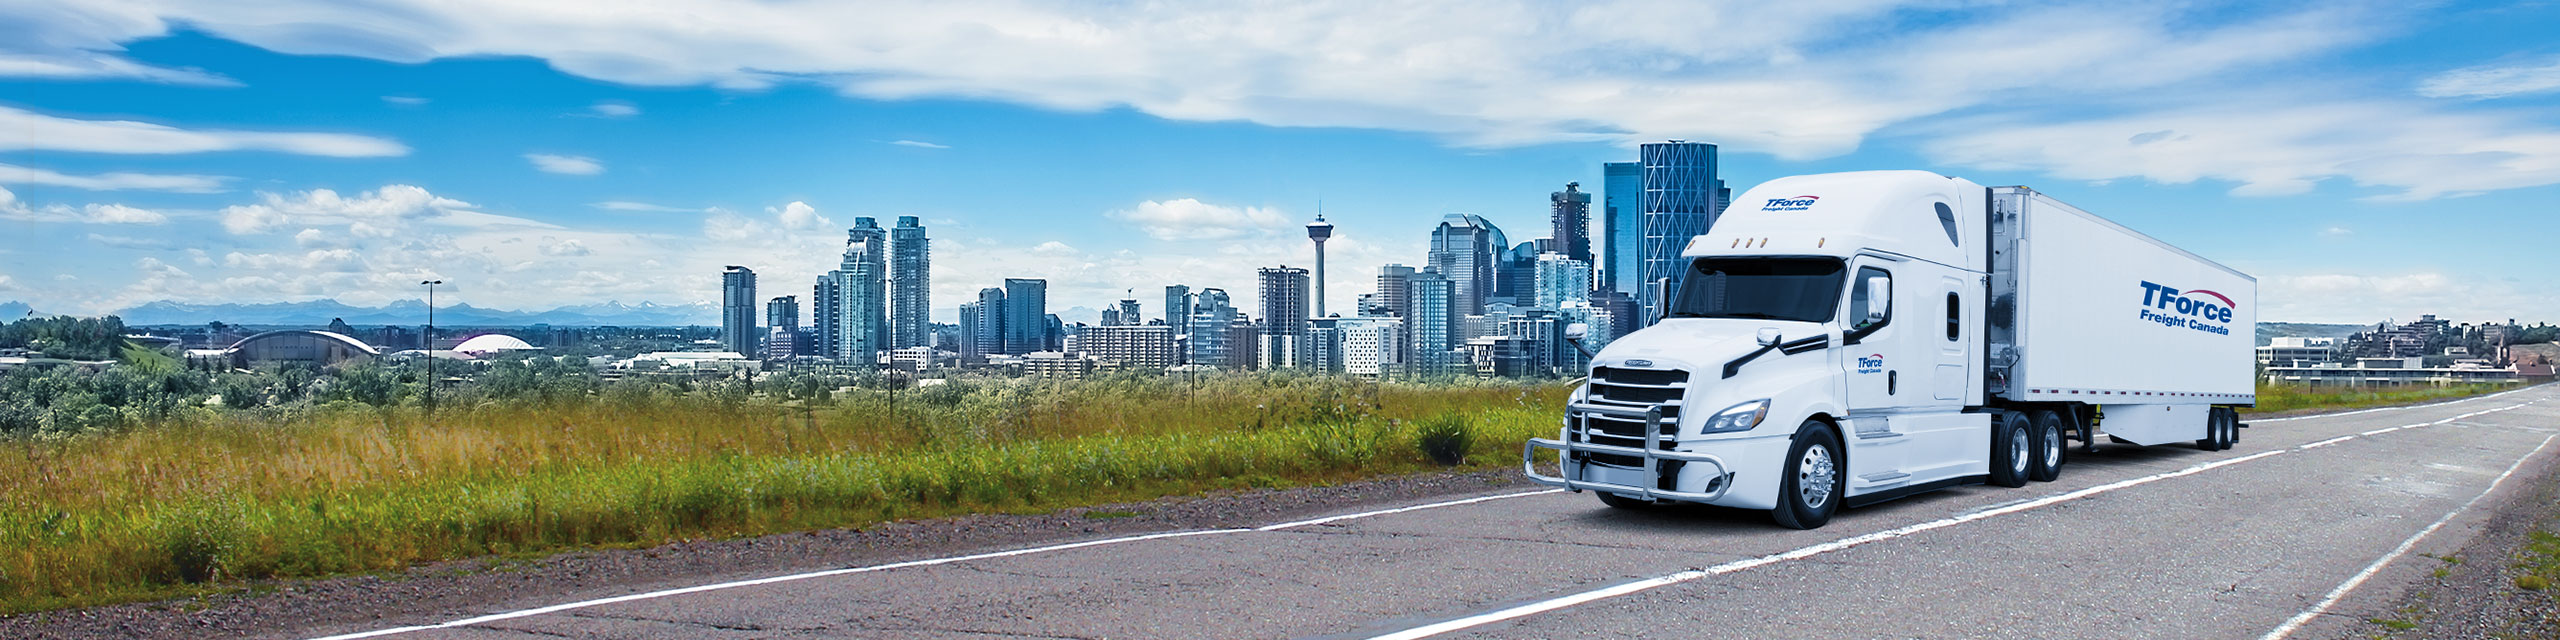 Semi-remorque de TForce Freight Canada roulant avec la silhouette de Calgary en arrière-plan